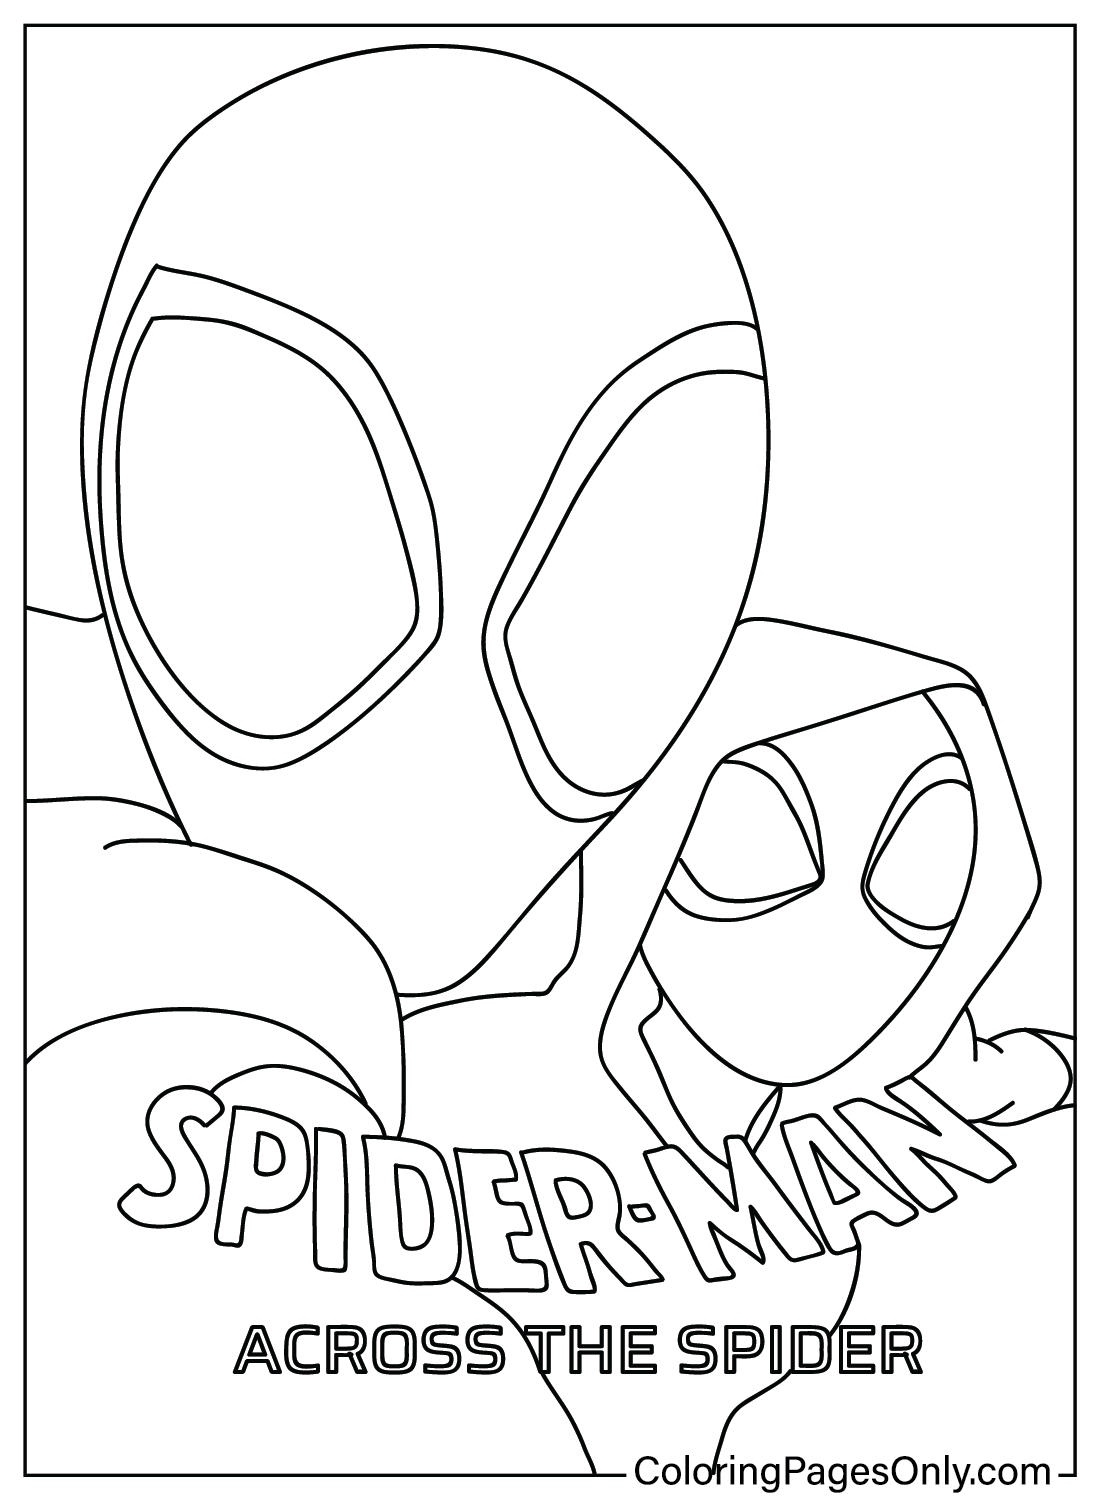 Página en color de dibujo de Spider-Man Across the Spider de Spider-Man: Across the Spider